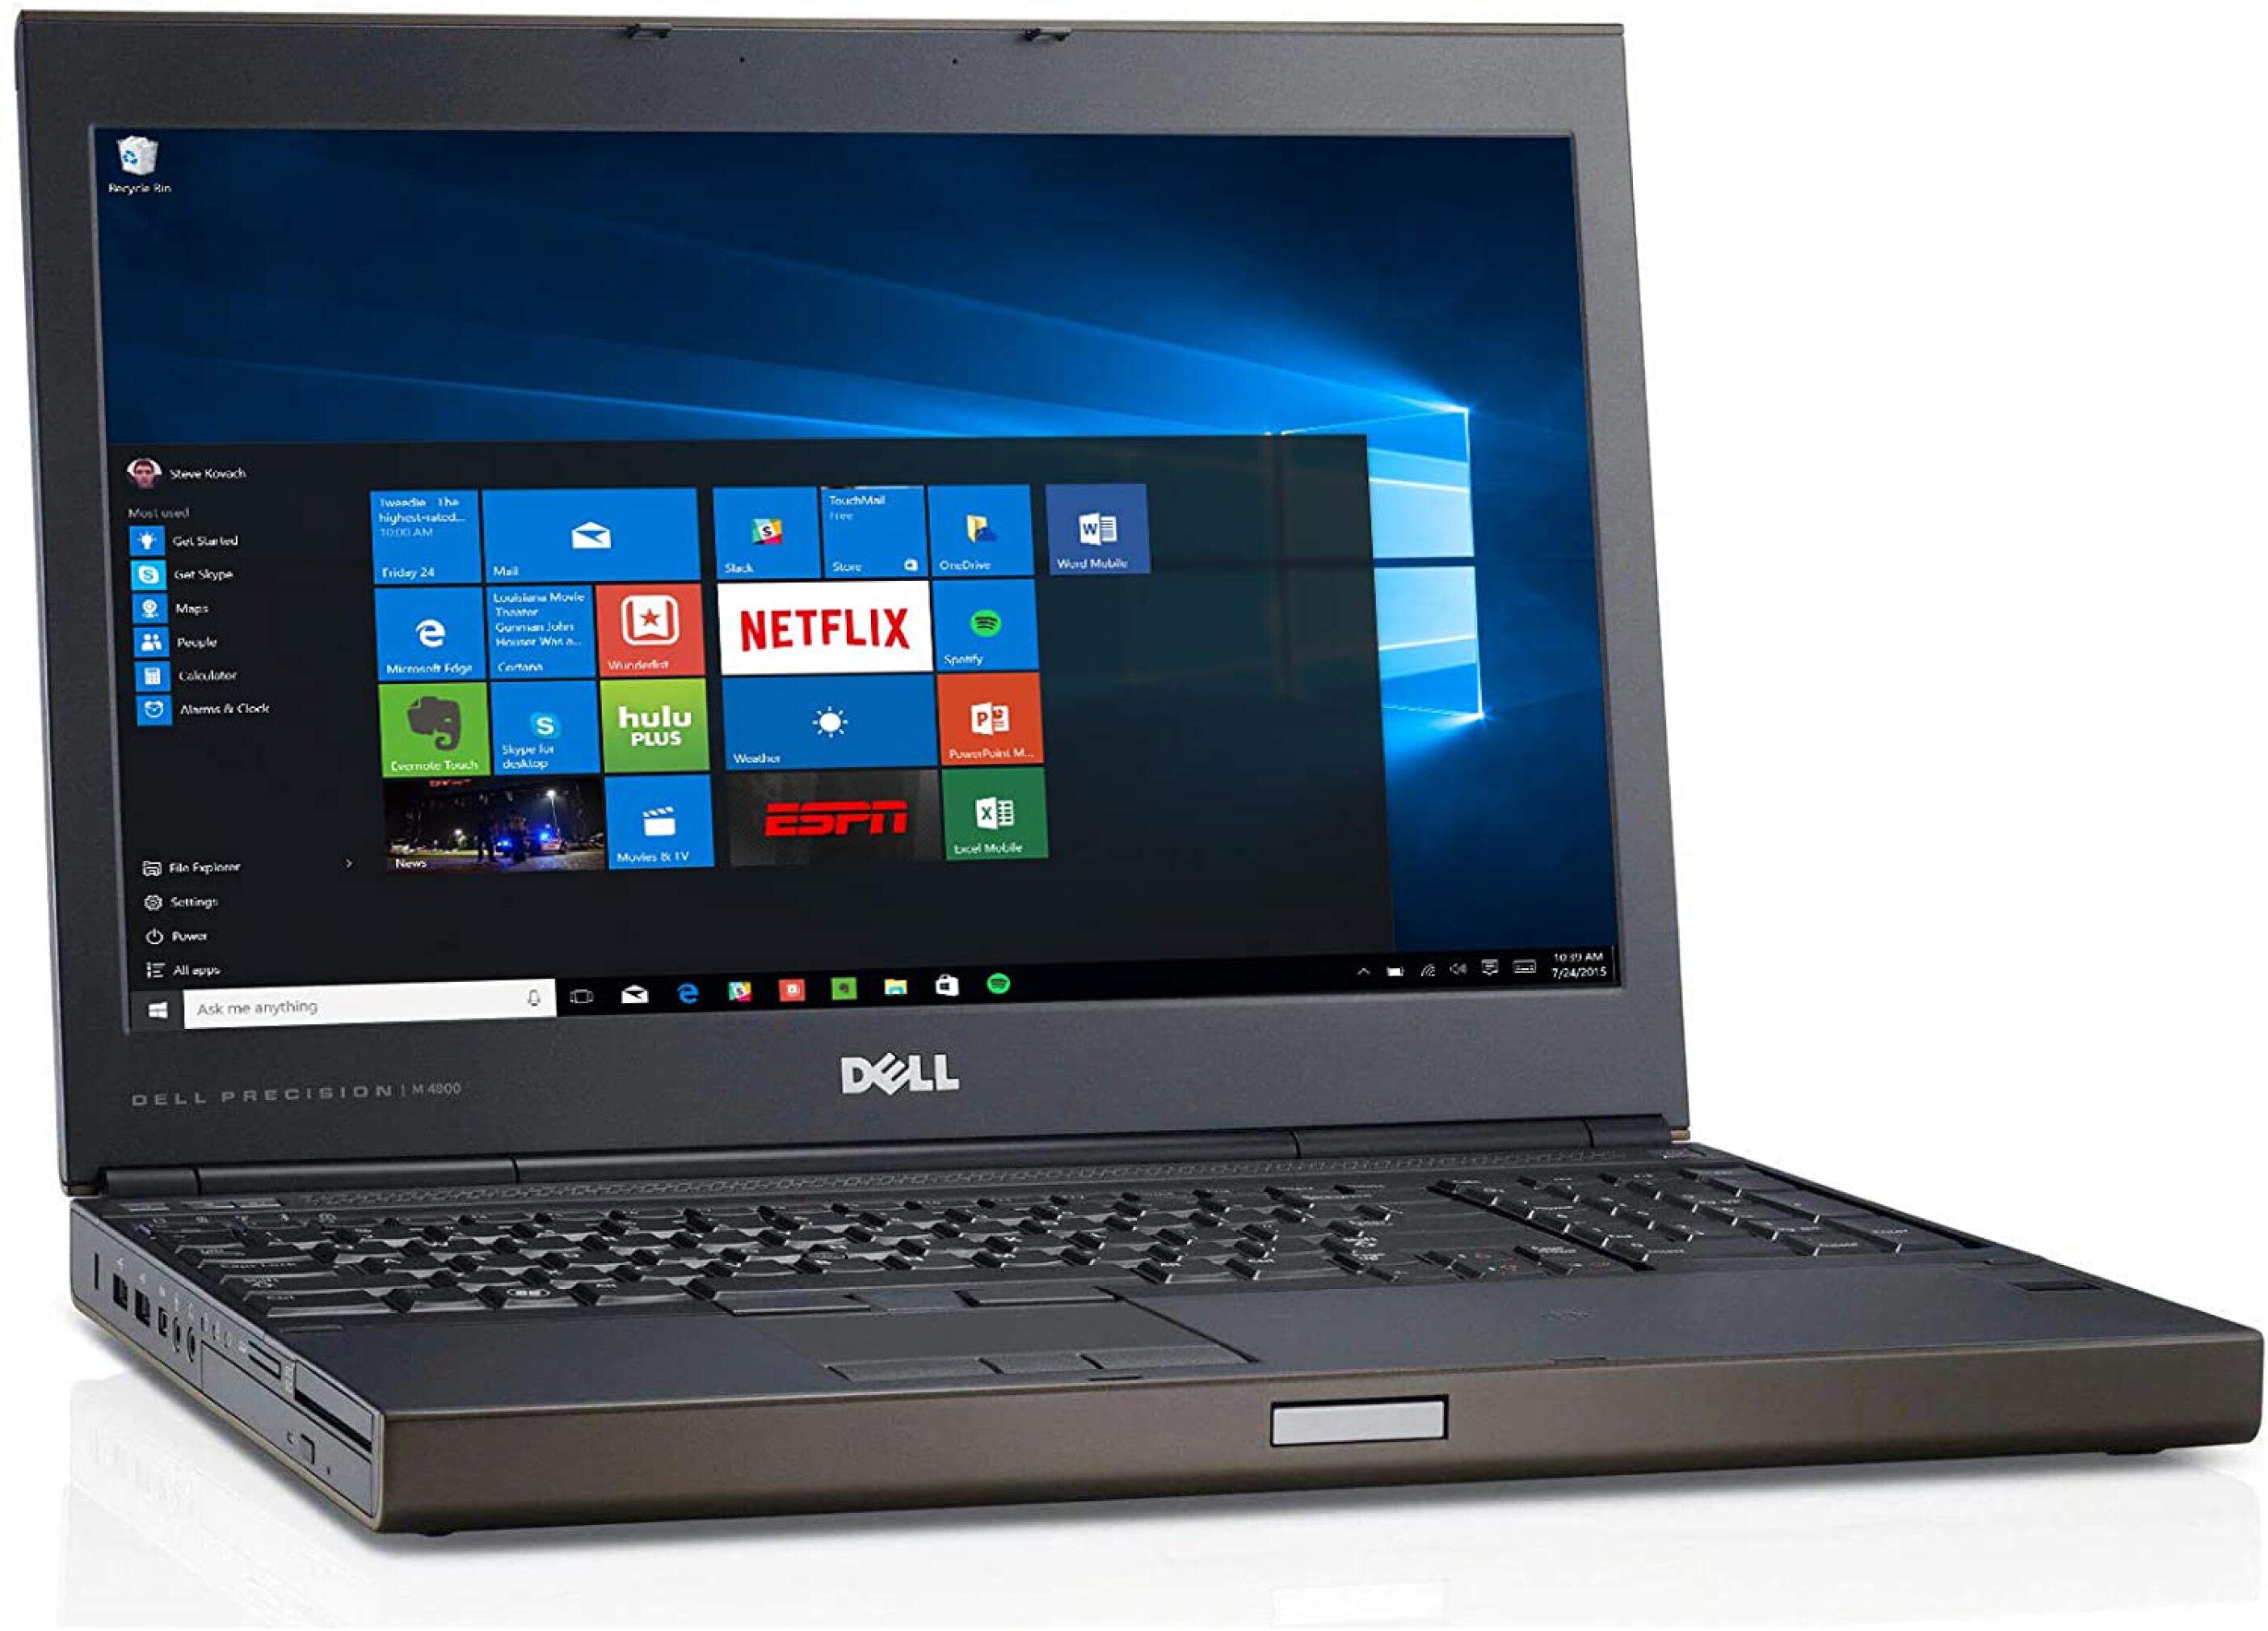  لپ تاپ Dell Precision M4800 | لاکچری لپ تاپ 